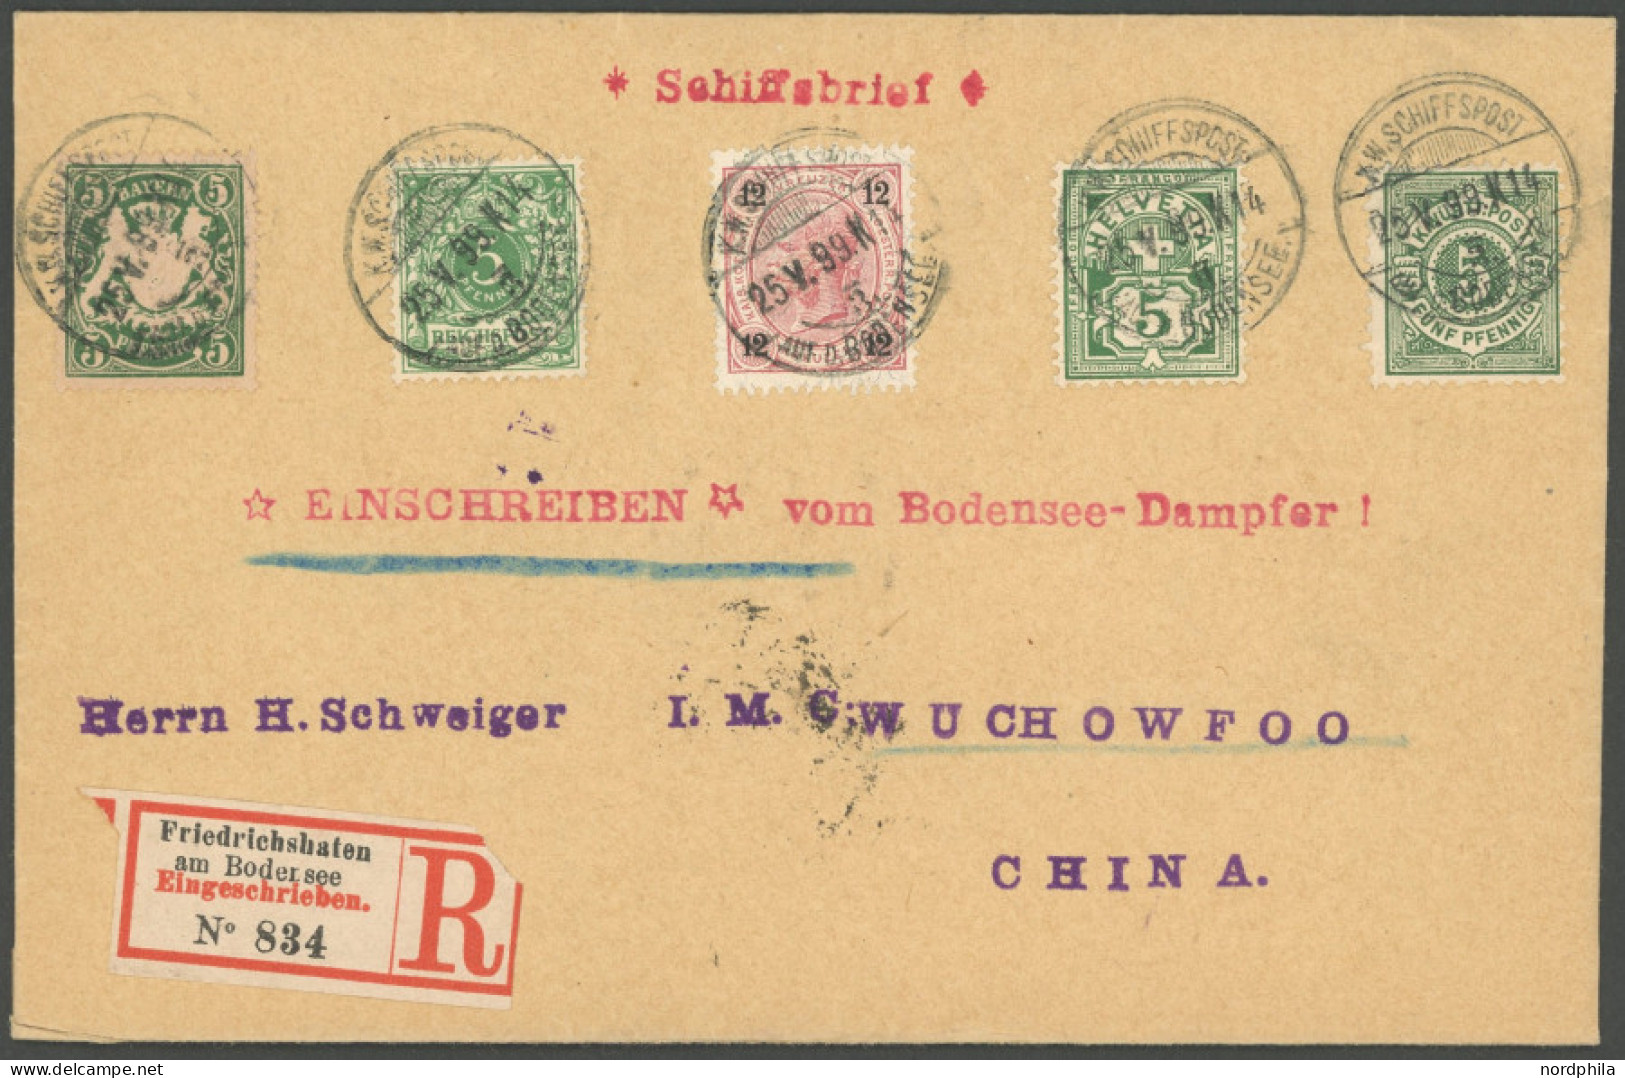 DEUTSCHE SCHIFFSPOST 1899, Bodensee-Schiffspost: Einschreib-Schiffspostbrief Mit Fünfländer-Frankatur Bayern, Deutsches  - Maritiem